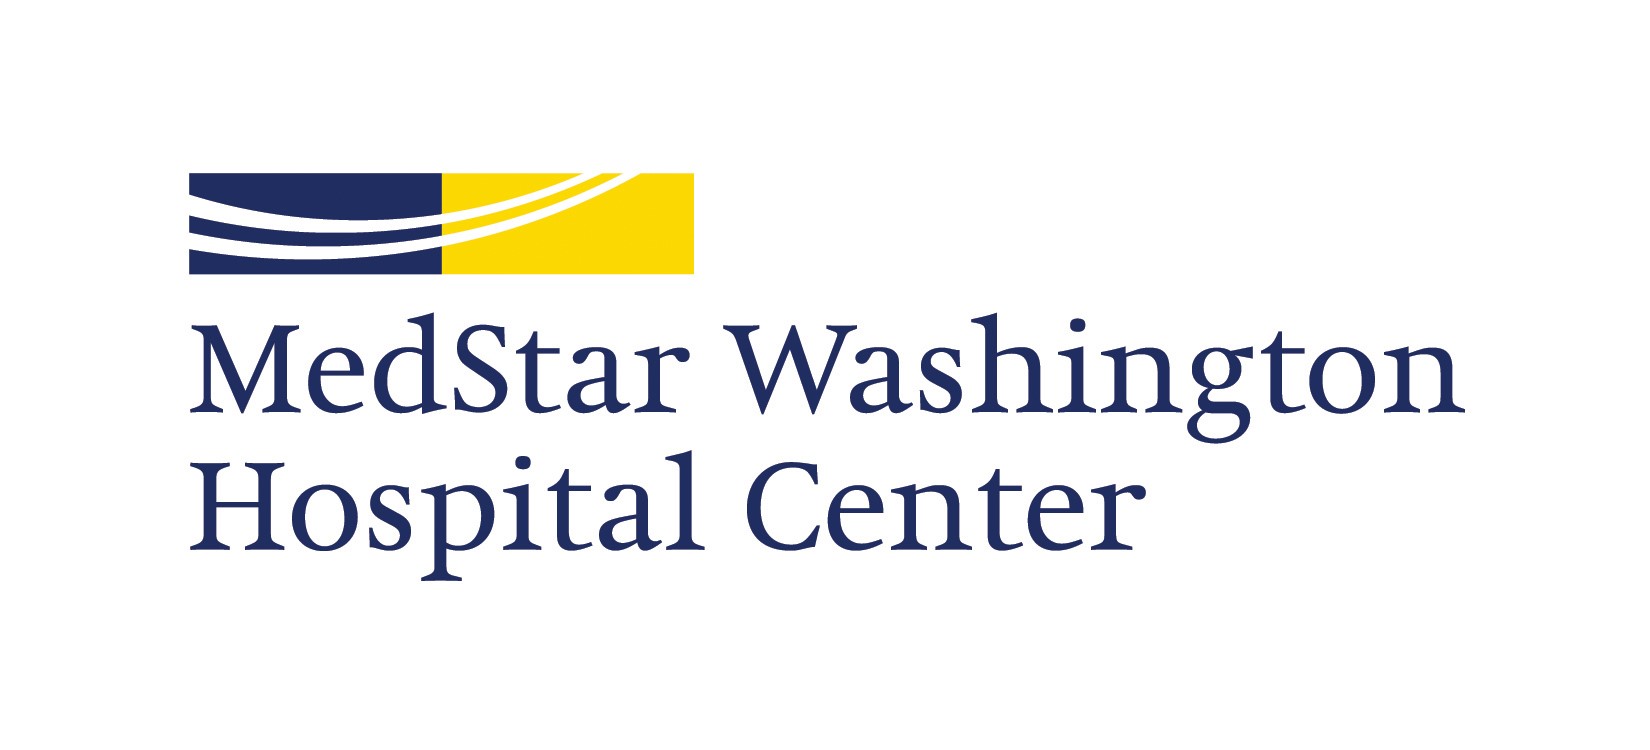 Medstar Washinton Hospital Center